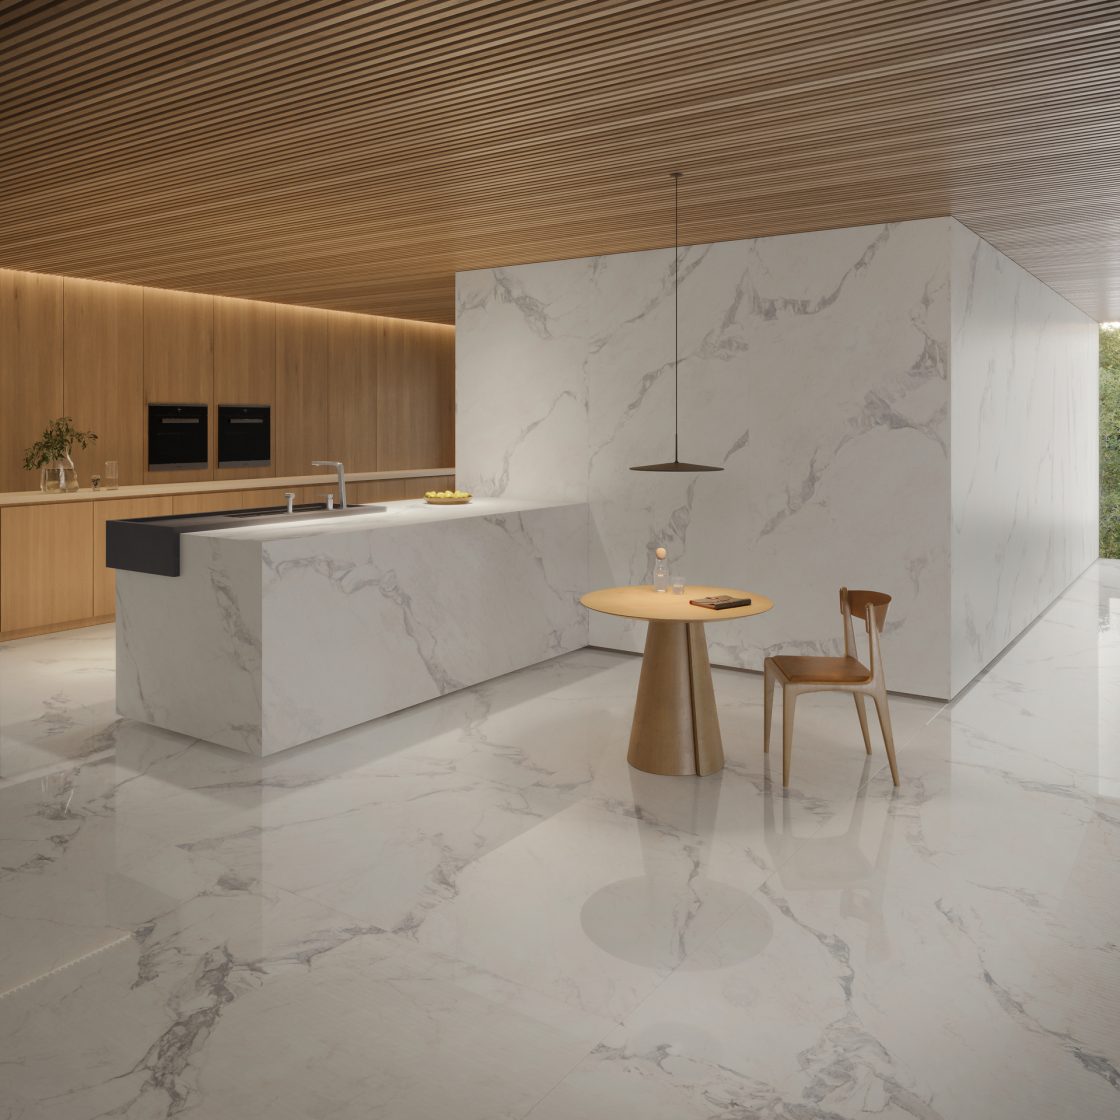 Cozinha com porcelanato que reproduz mármore nas paredes, no piso e na ilha; mesa e cadeira de madeira e armários também em madeira